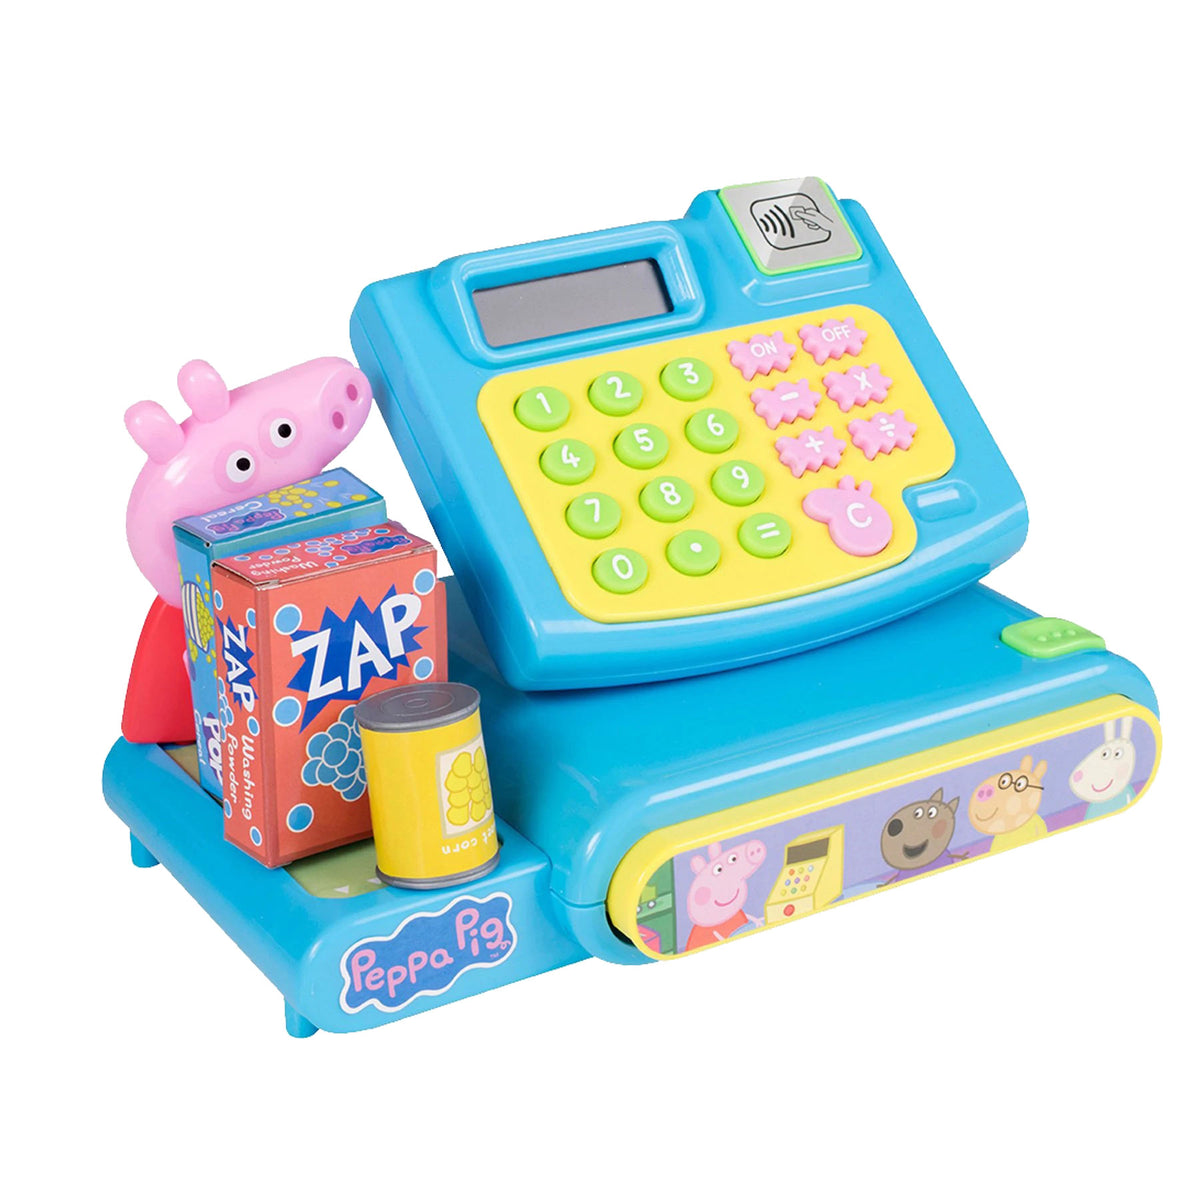 Peppa Pig Cash Register/Till Toy